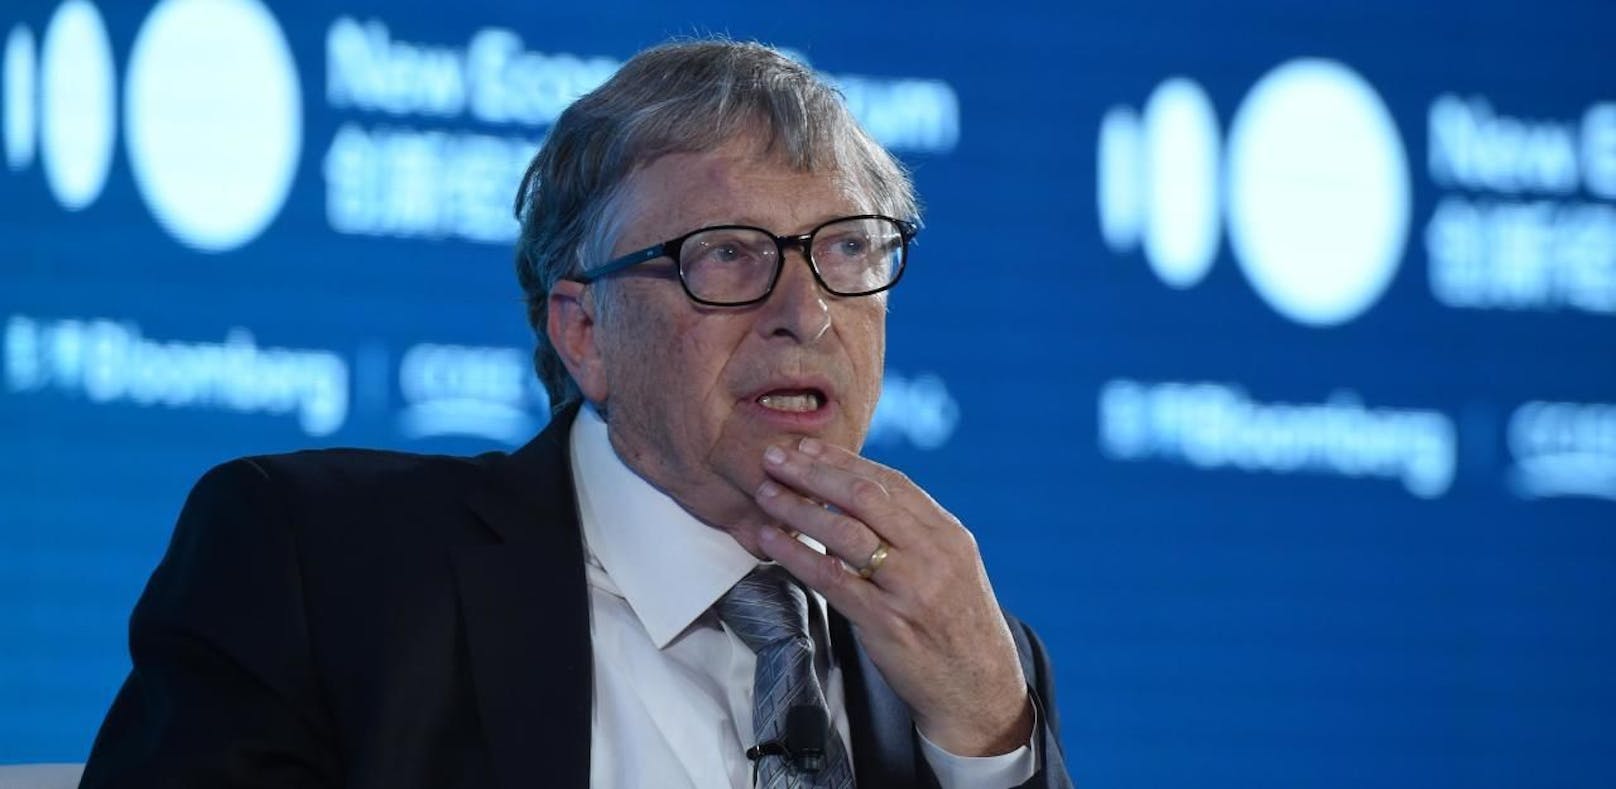 Bill Gates gibt Buchtipps: Das solltest du lesen - Science | heute.at